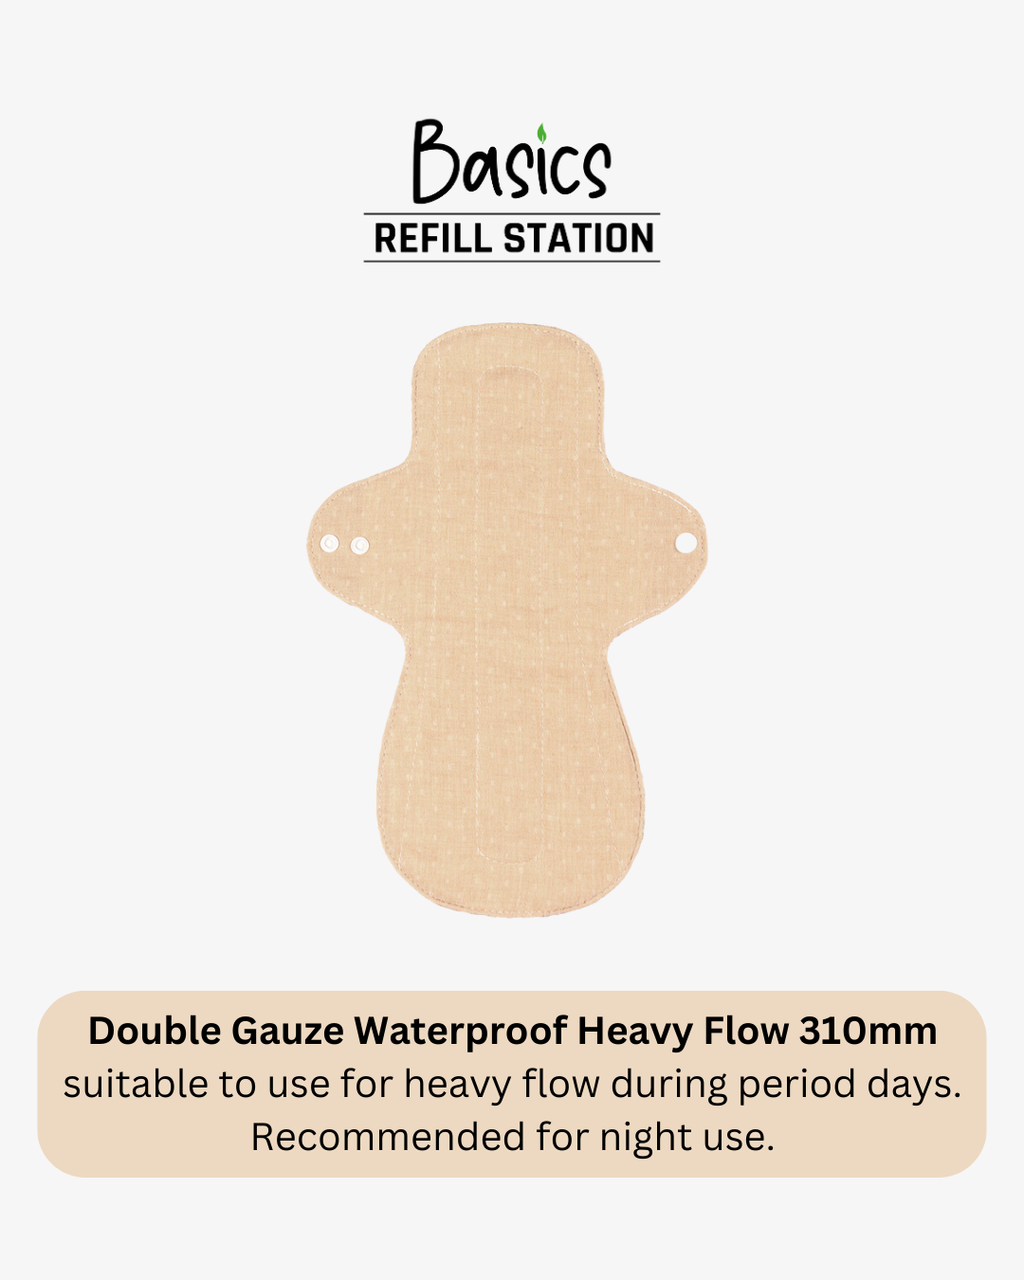 Main Double Gauze Waterproof 310mm